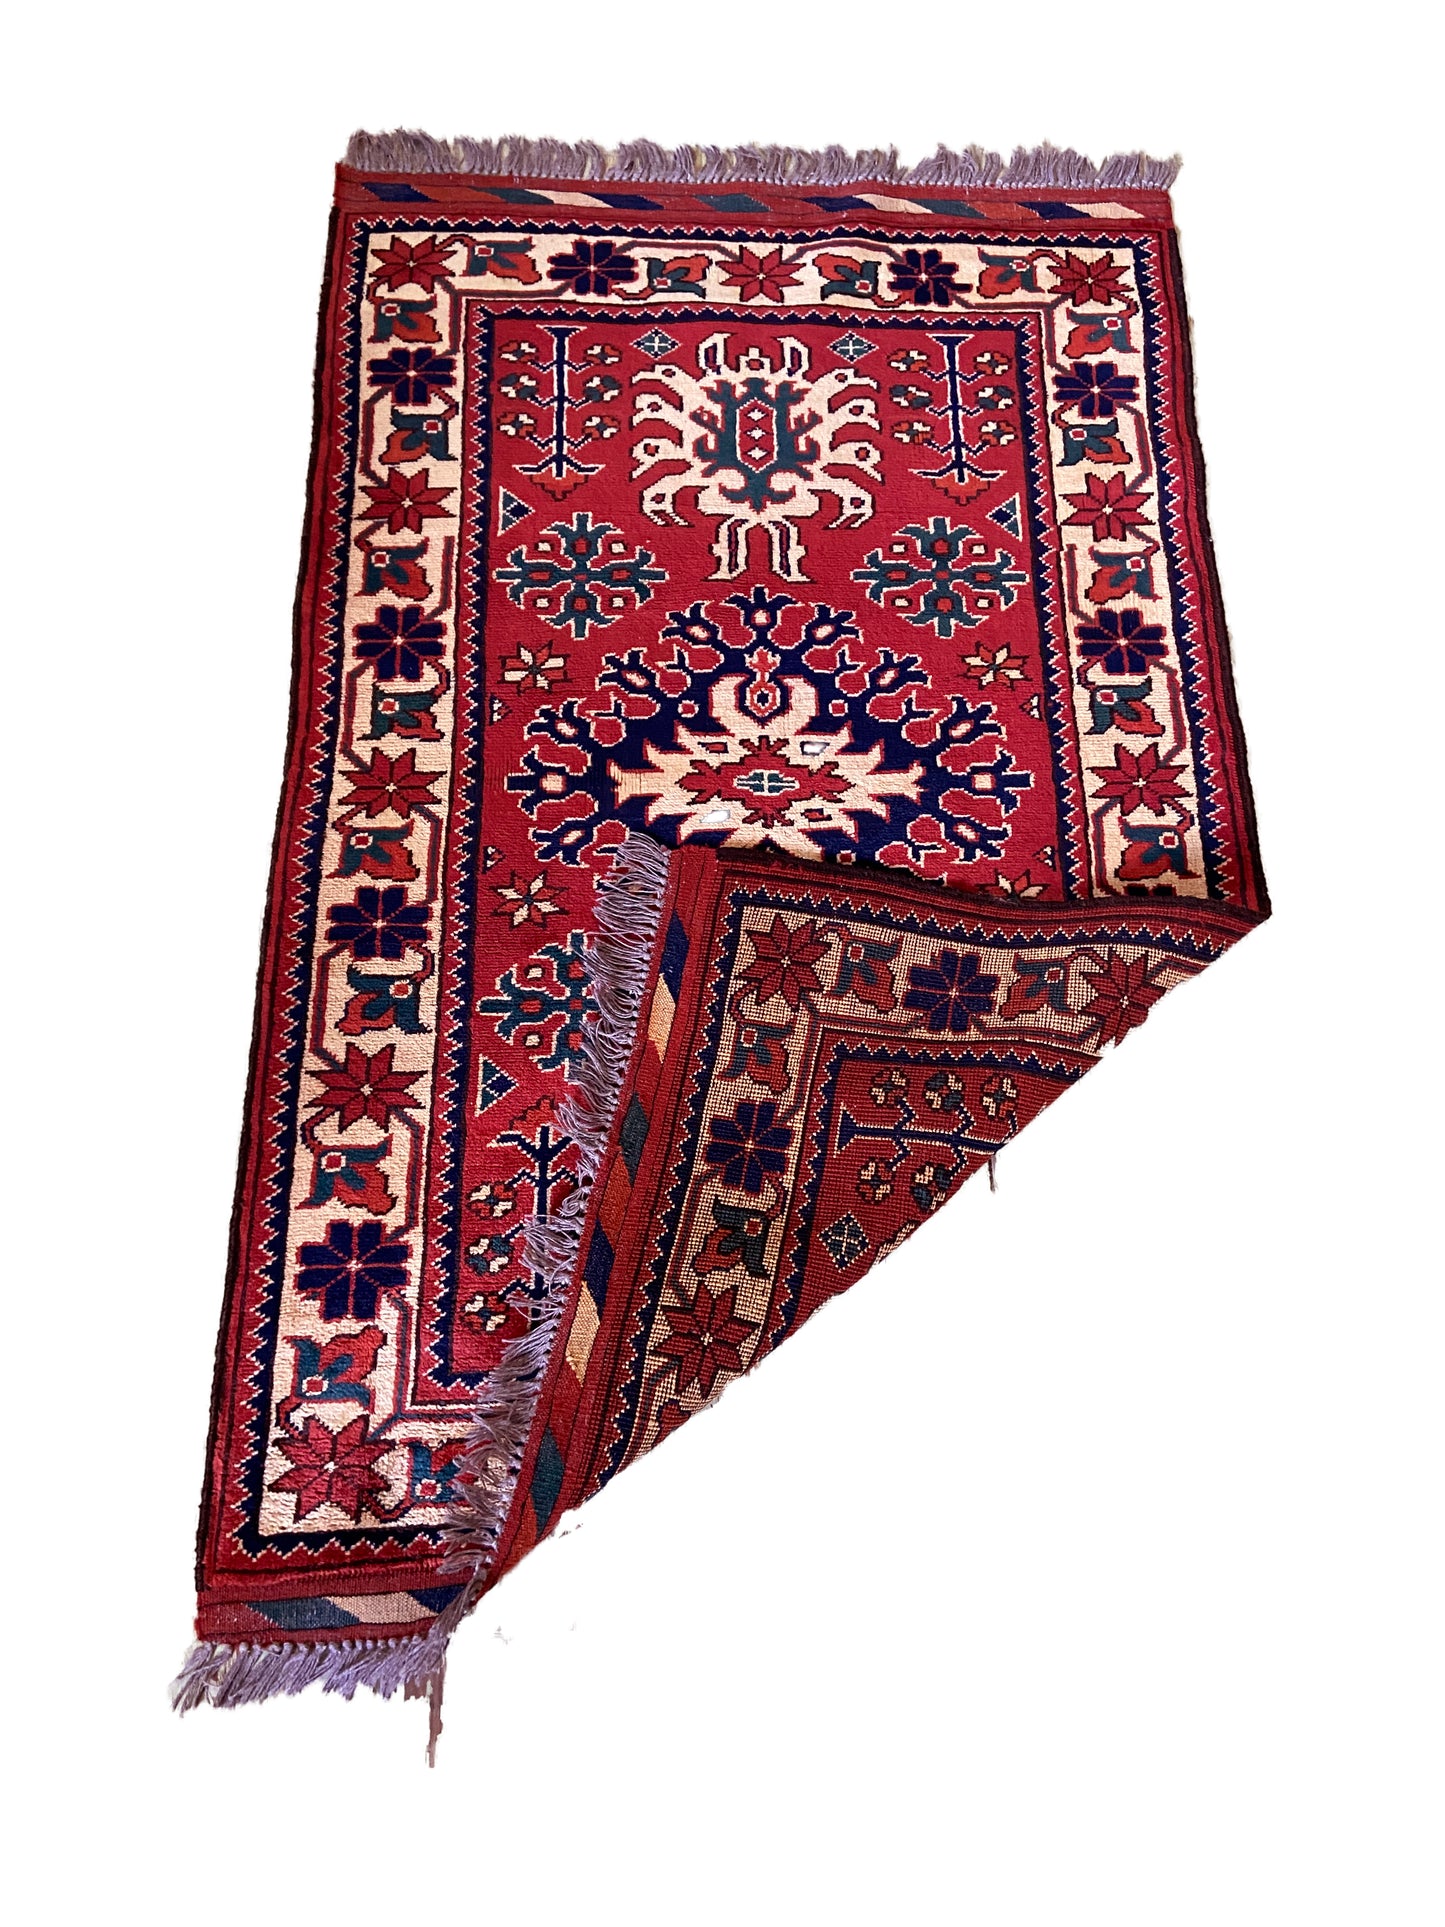 #3967 Colorful Vintage Turkish Wool Rug 4.3' by 2.6'